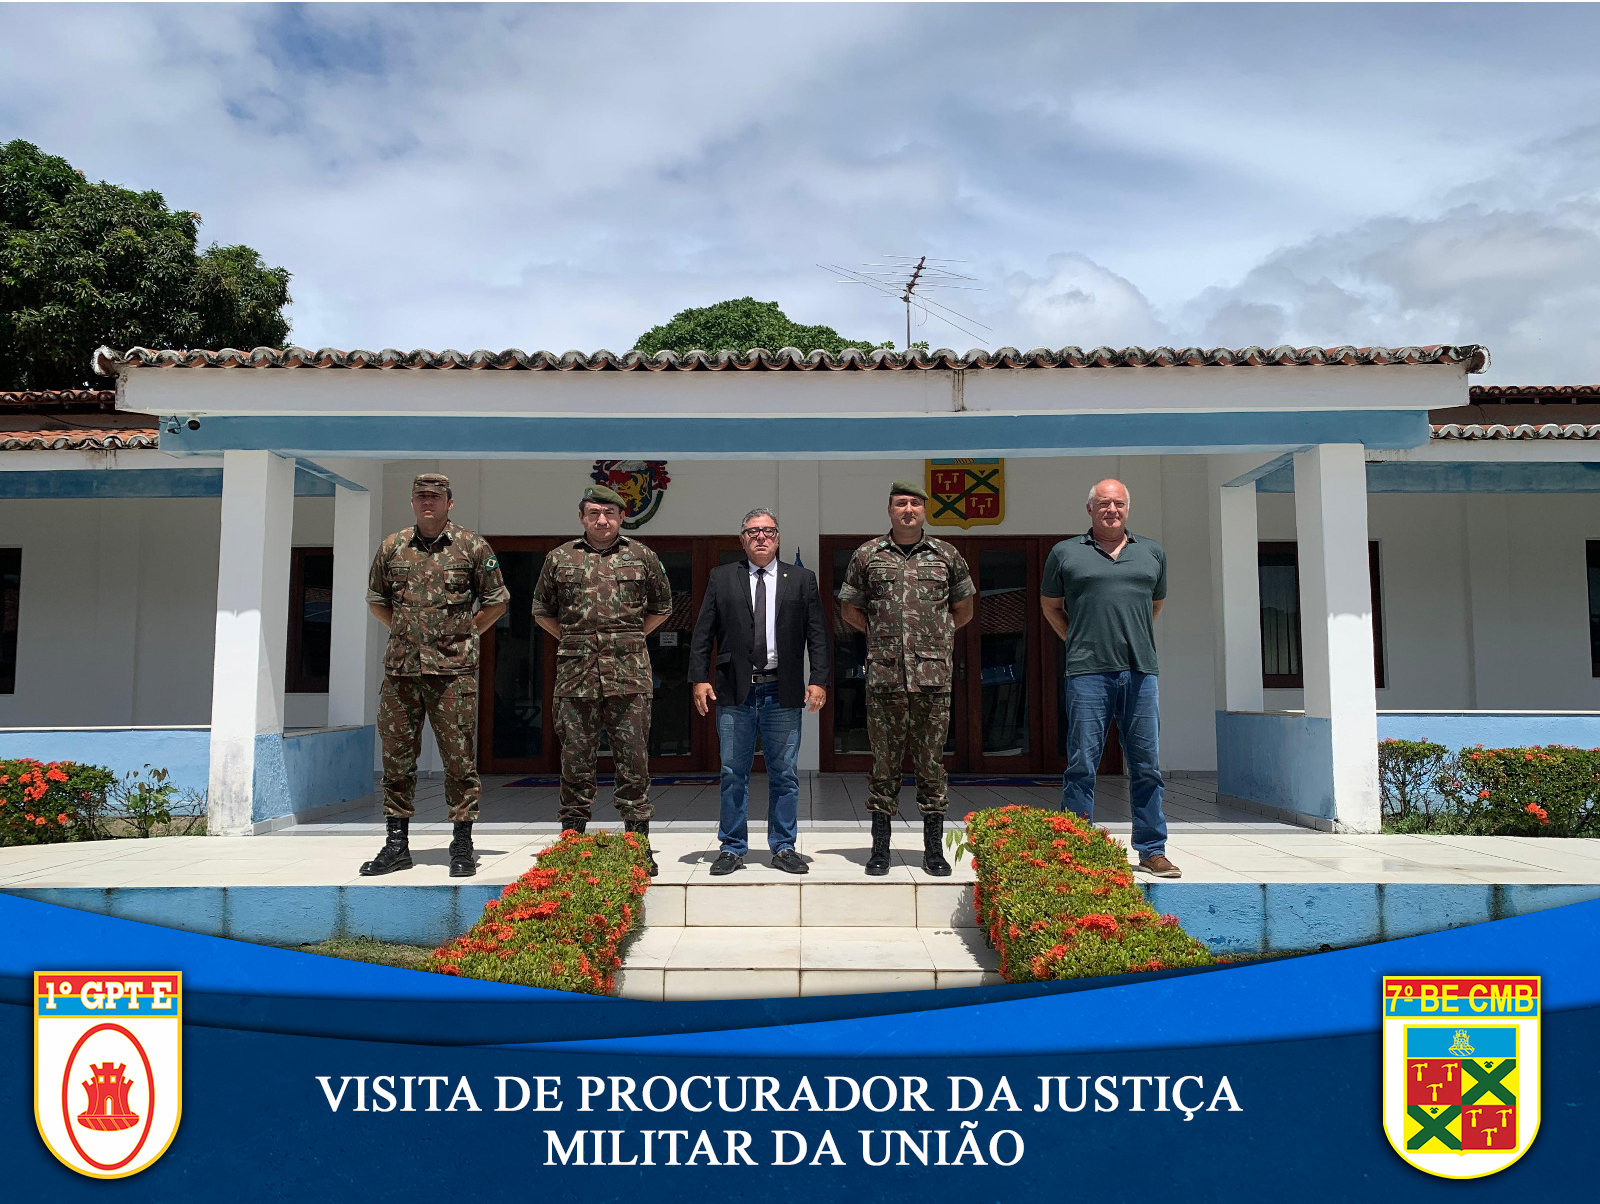 O 7º BATALHÃO DE ENGENHARIA DE COMBATE RECEBE VISITA DE PROCURADOR DA JUSTIÇA MILITAR DA UNIÃO